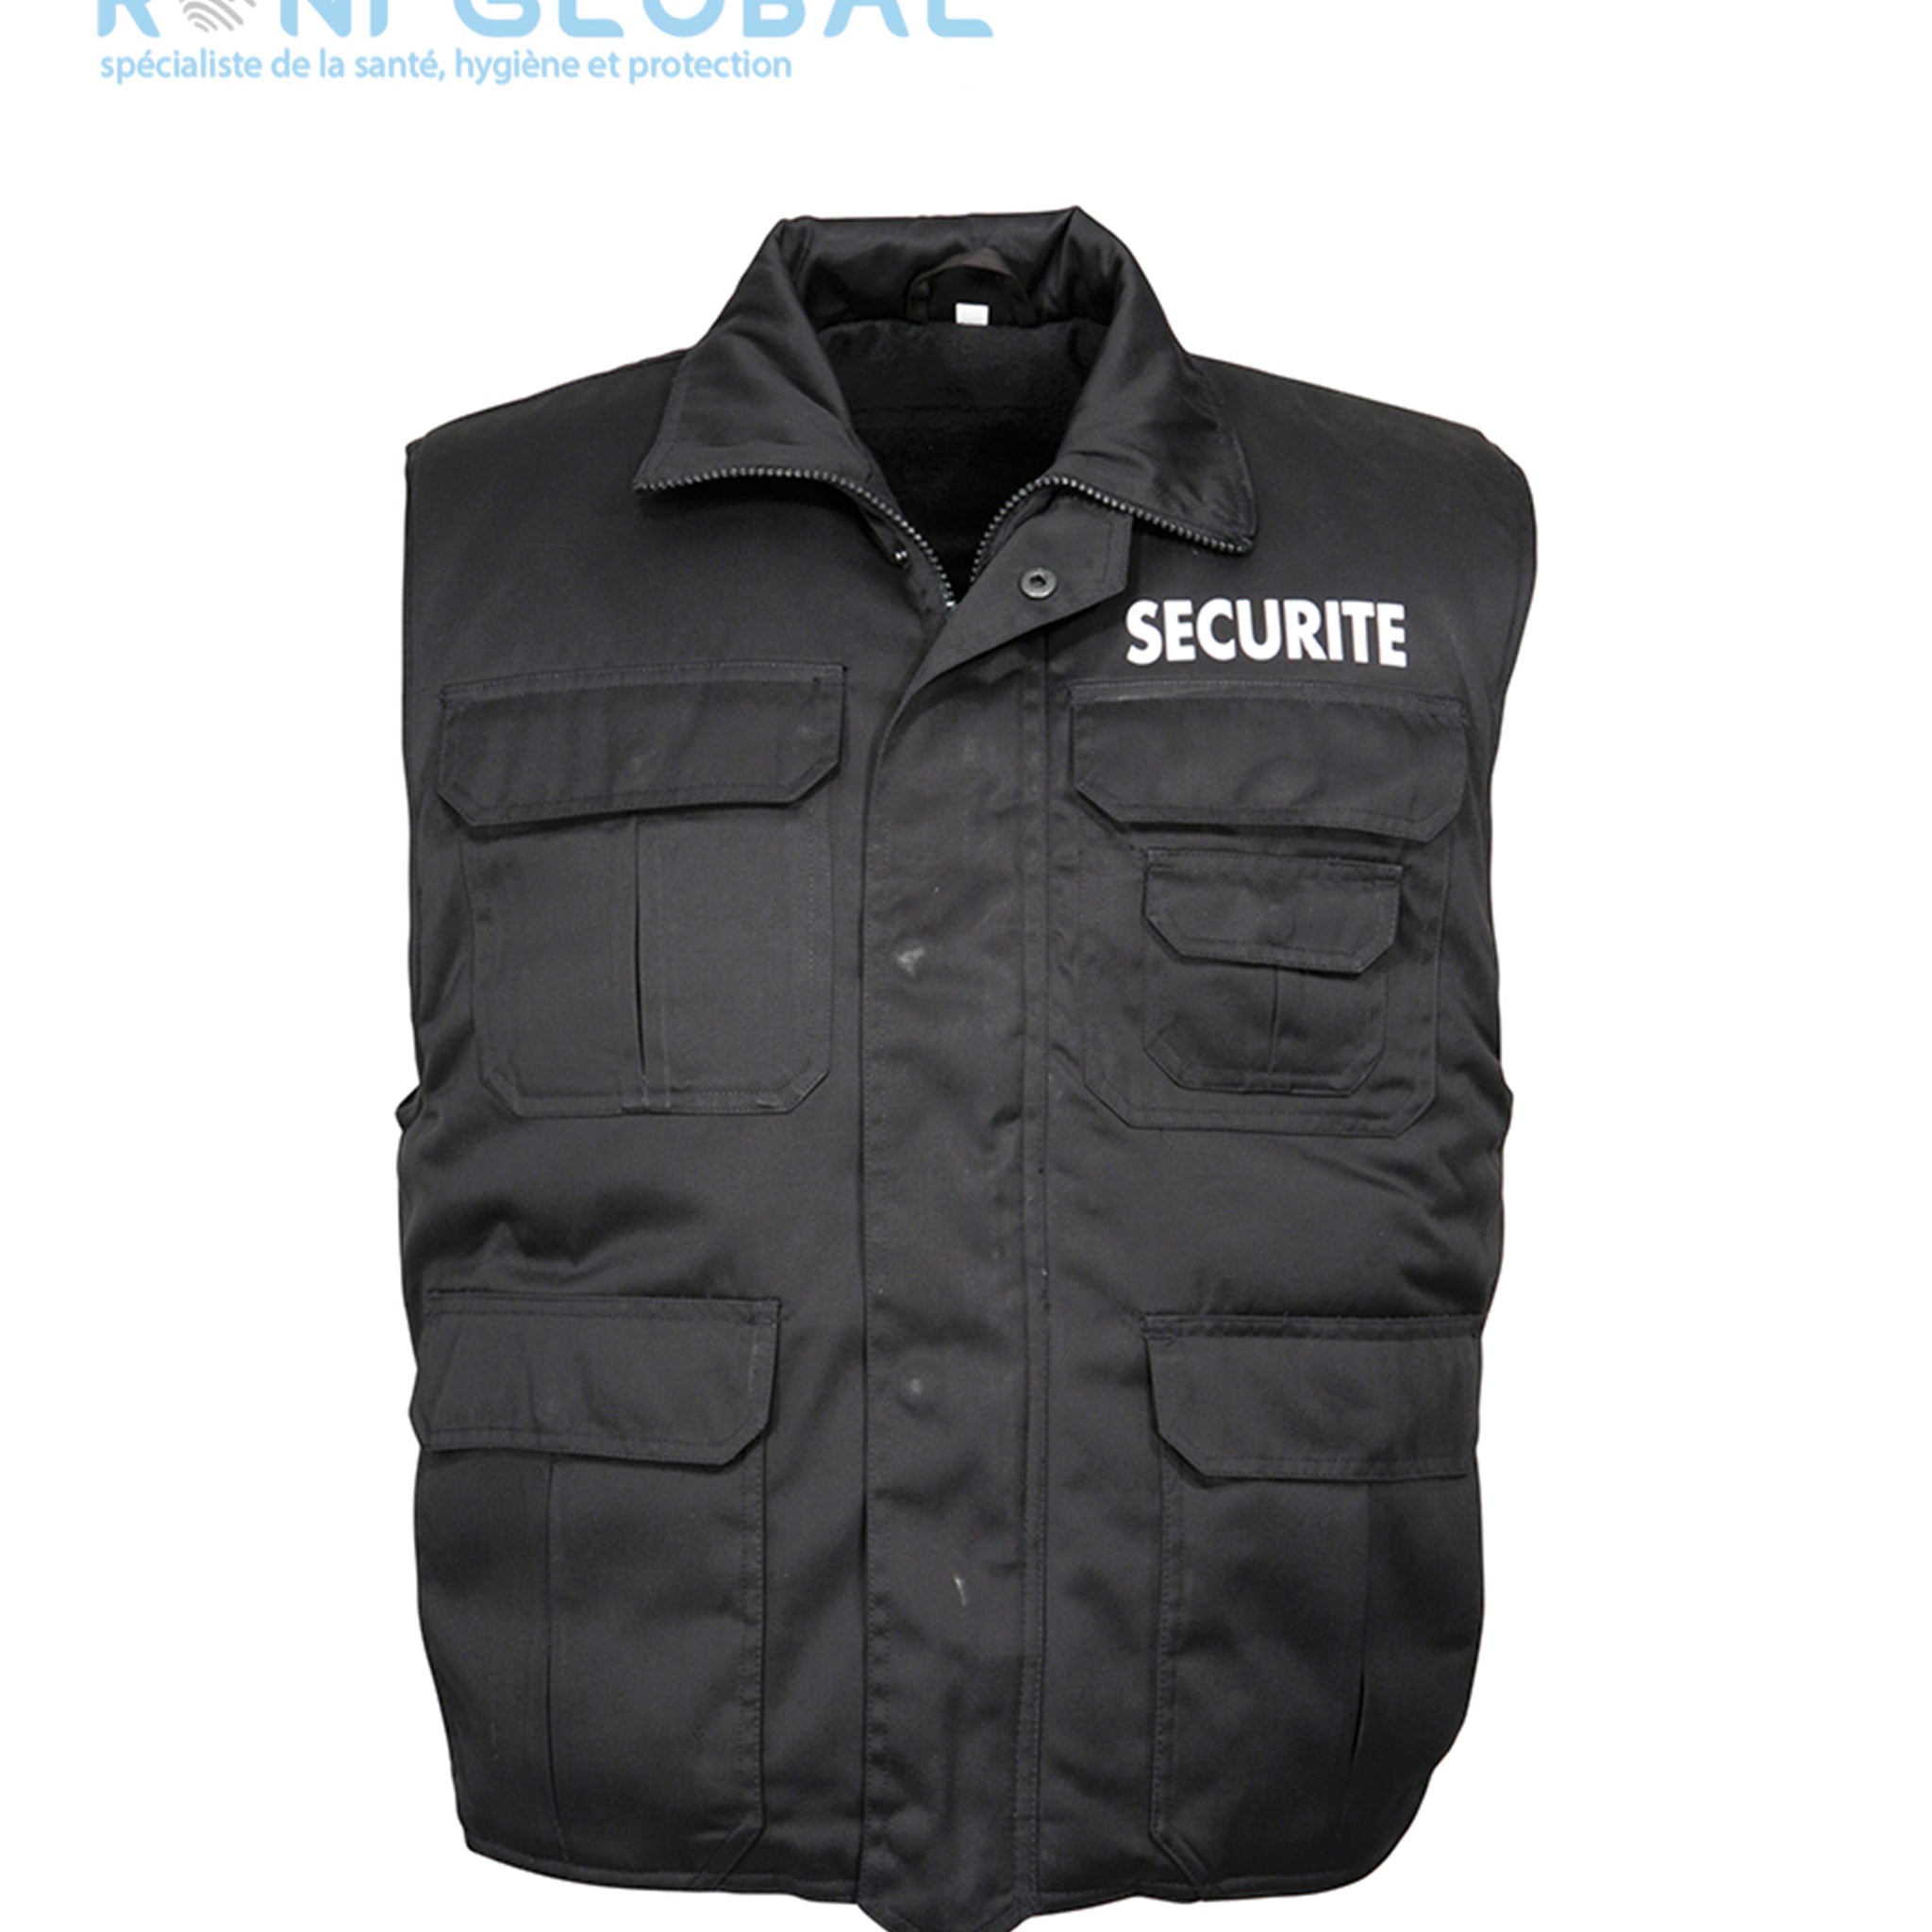 Gilet de sécurité noir, imperméable et polaire, type ranger, en polyester et coton 8 poches - GILET RANGERS SECURITE CITYGUARD